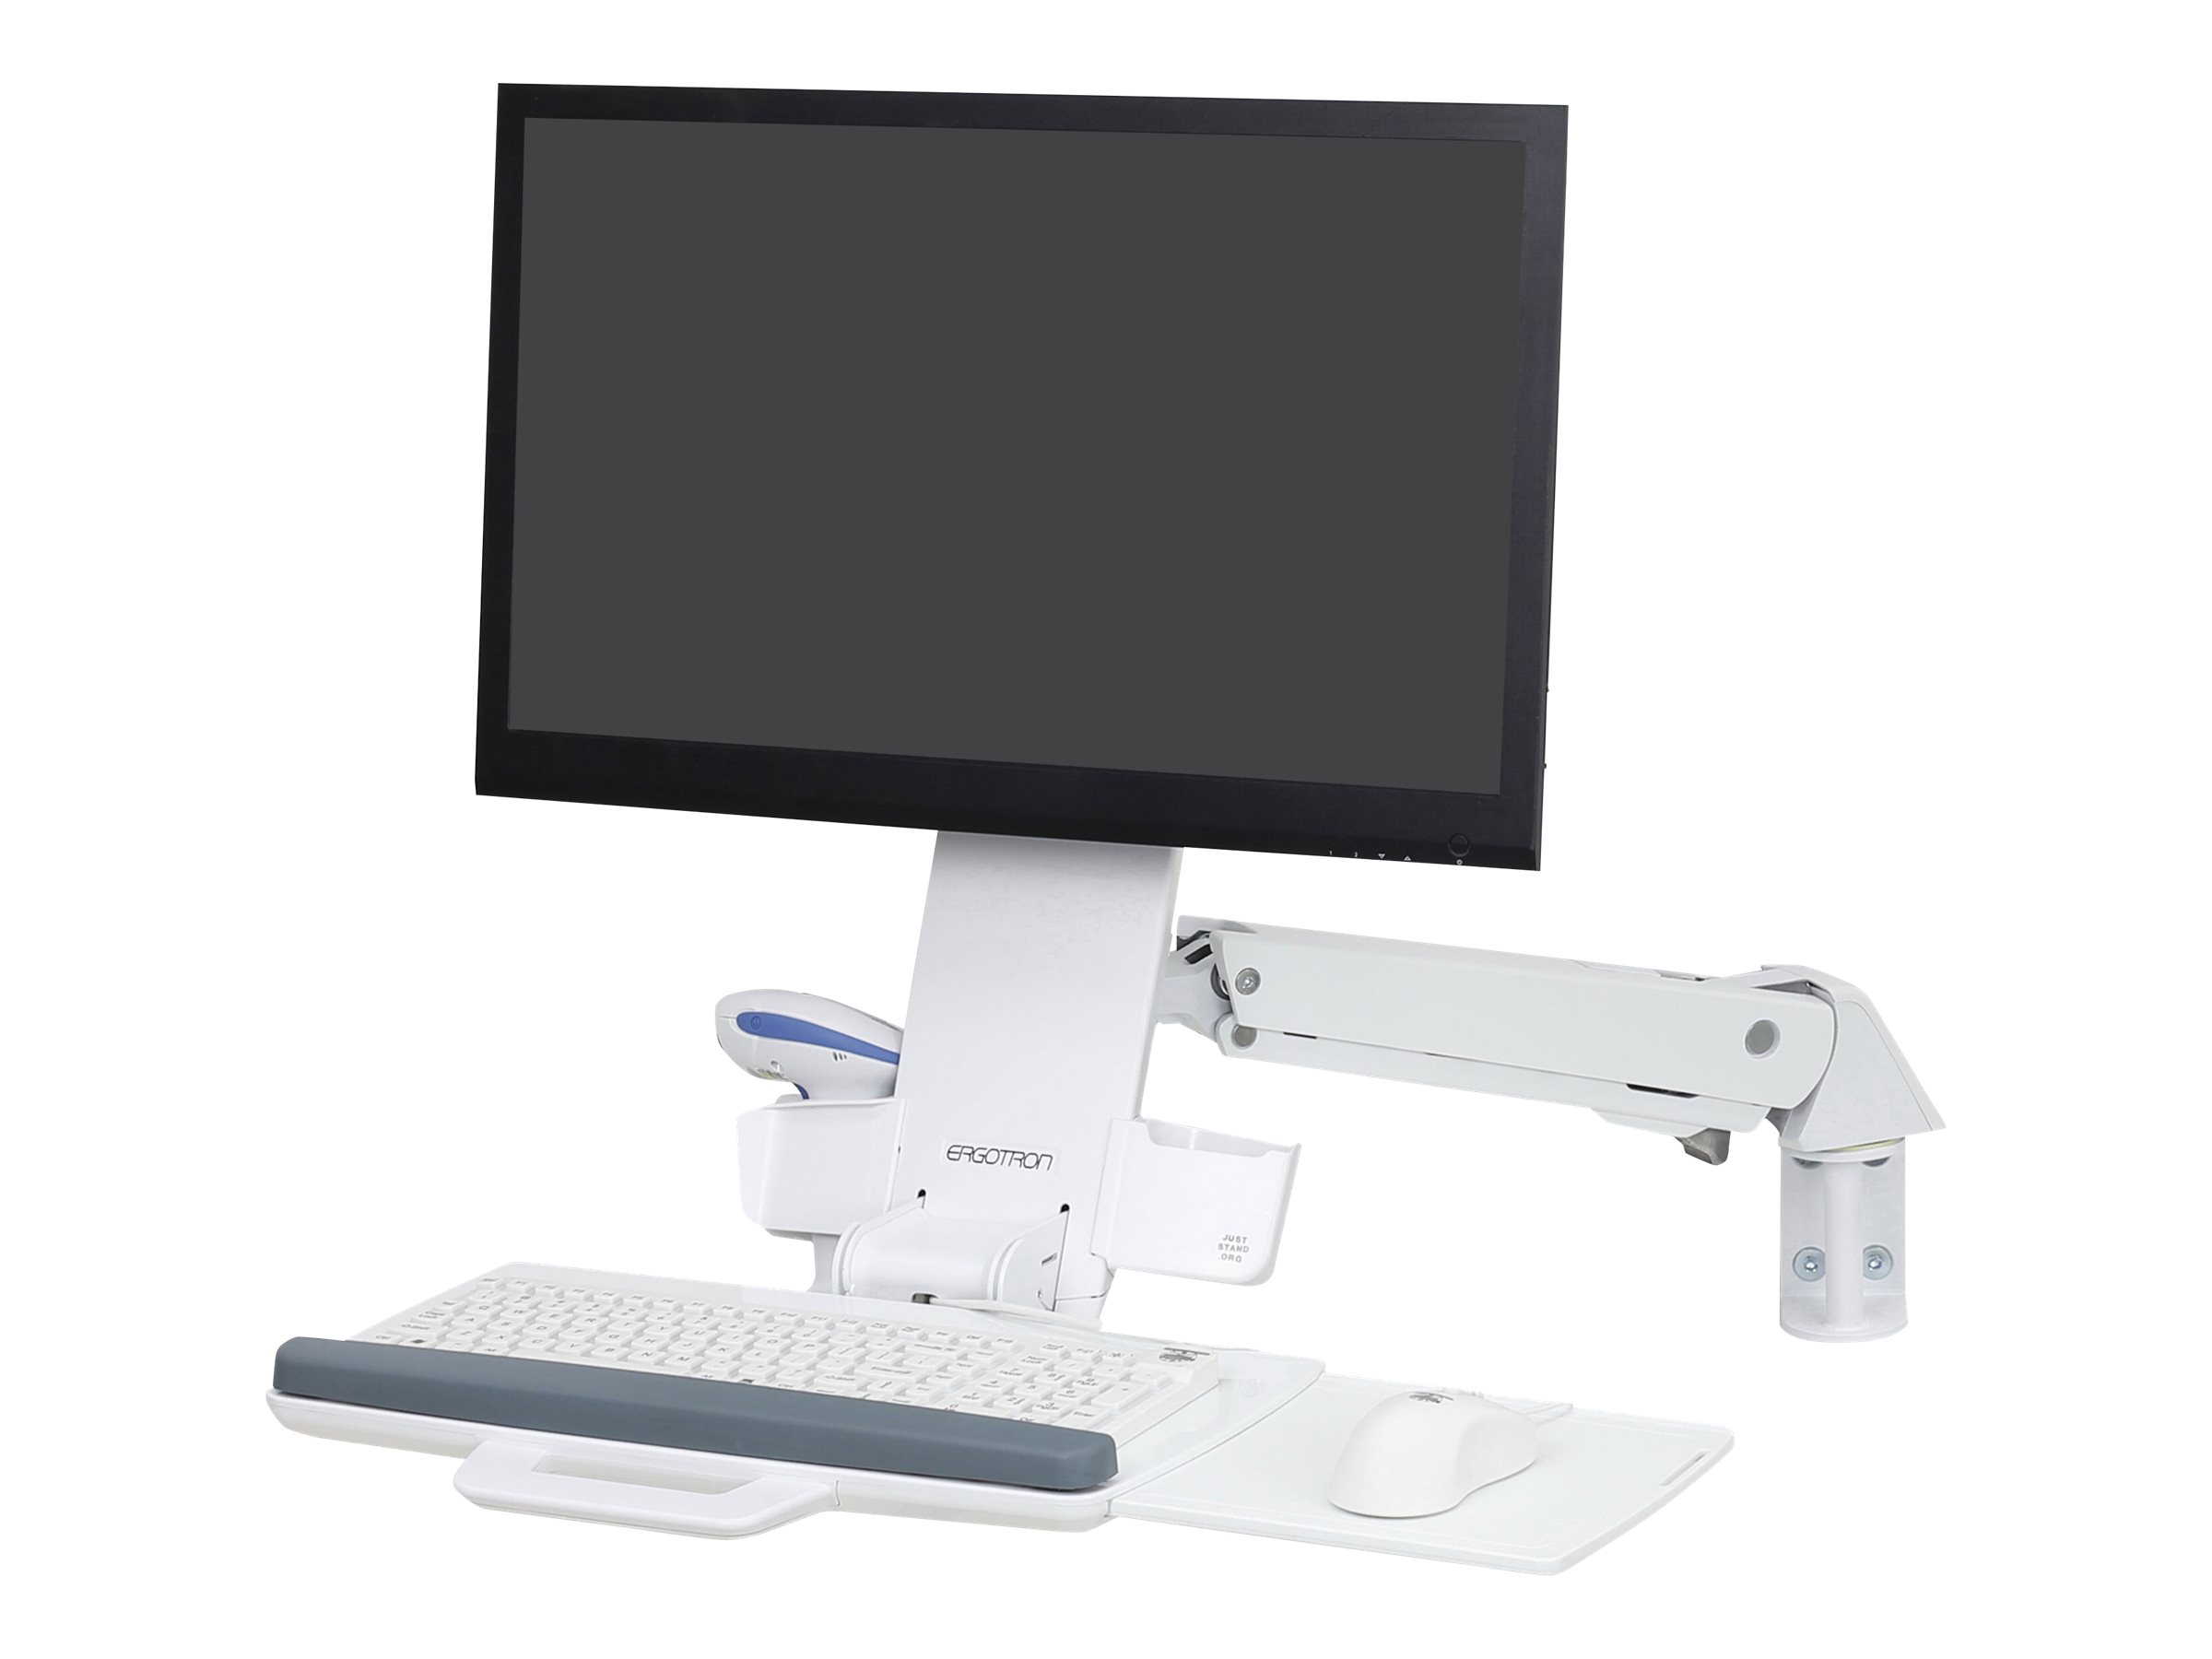 Ergotron Sit-Stand Combo - Kit de montage (bras articulé, tiroir à clavier) - pour écran LCD/équipement PC - aluminium, plastique haute qualité - blanc - Taille d'écran : jusqu'à 24 pouces - montable sur mur - 45-266-216 - Accessoires pour écran